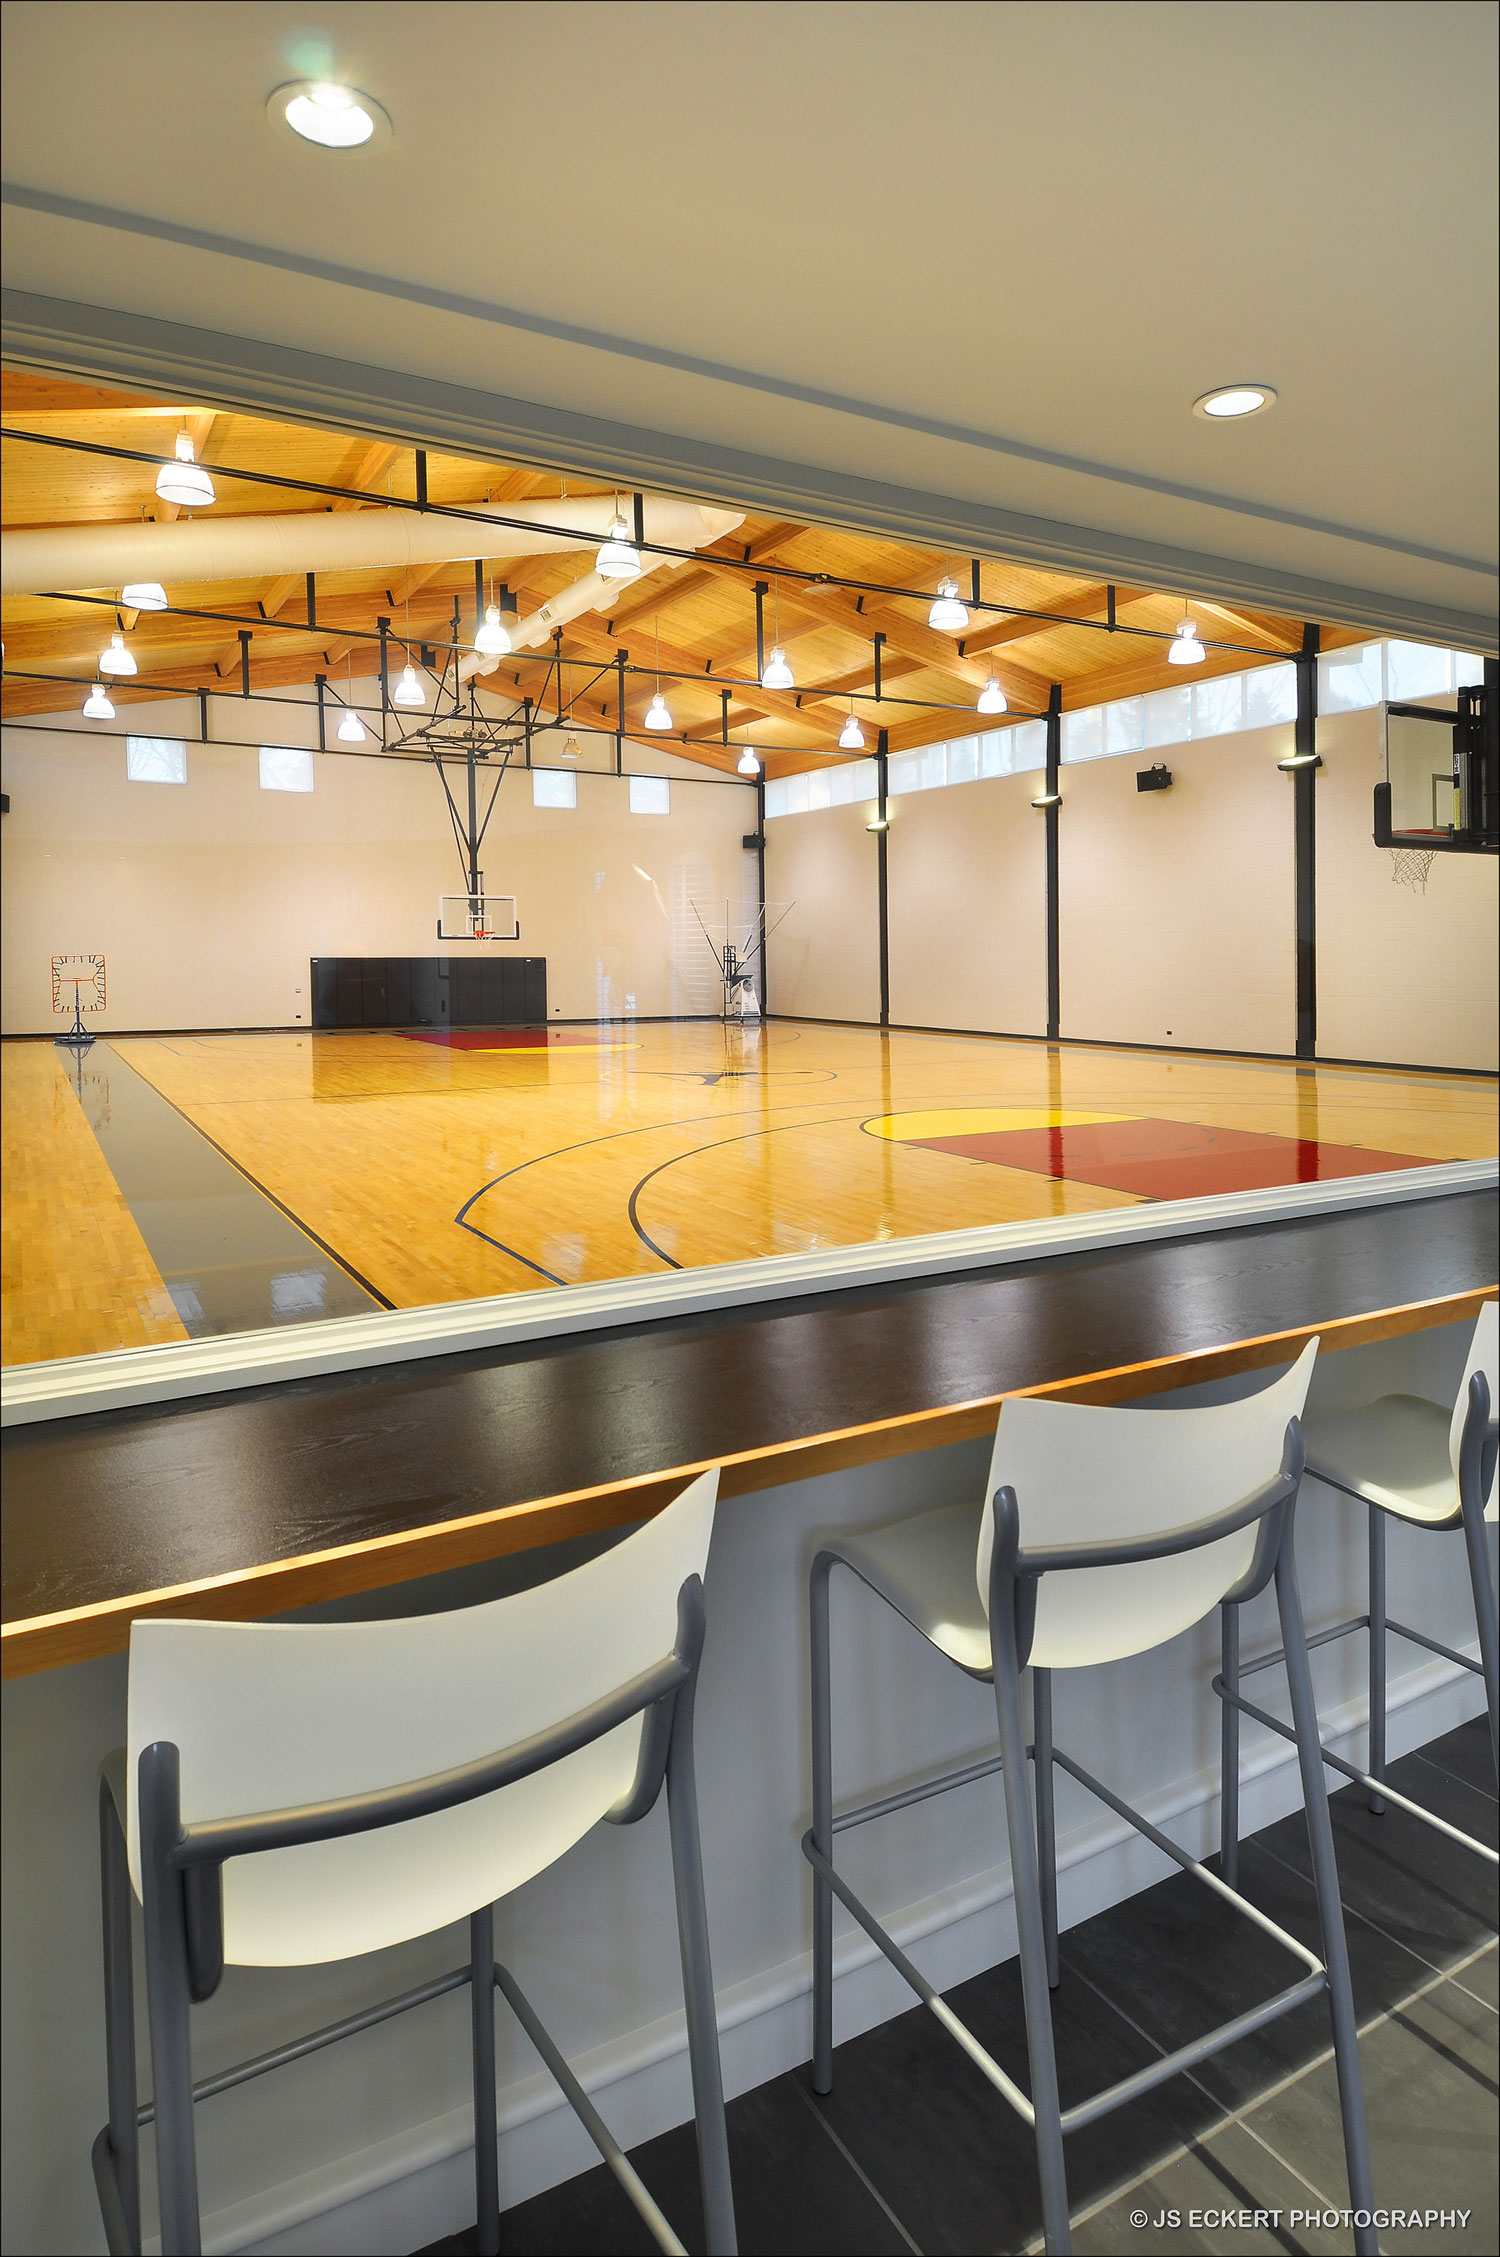 Спортзал для баскетбола по стандартам НБА - Фото 2